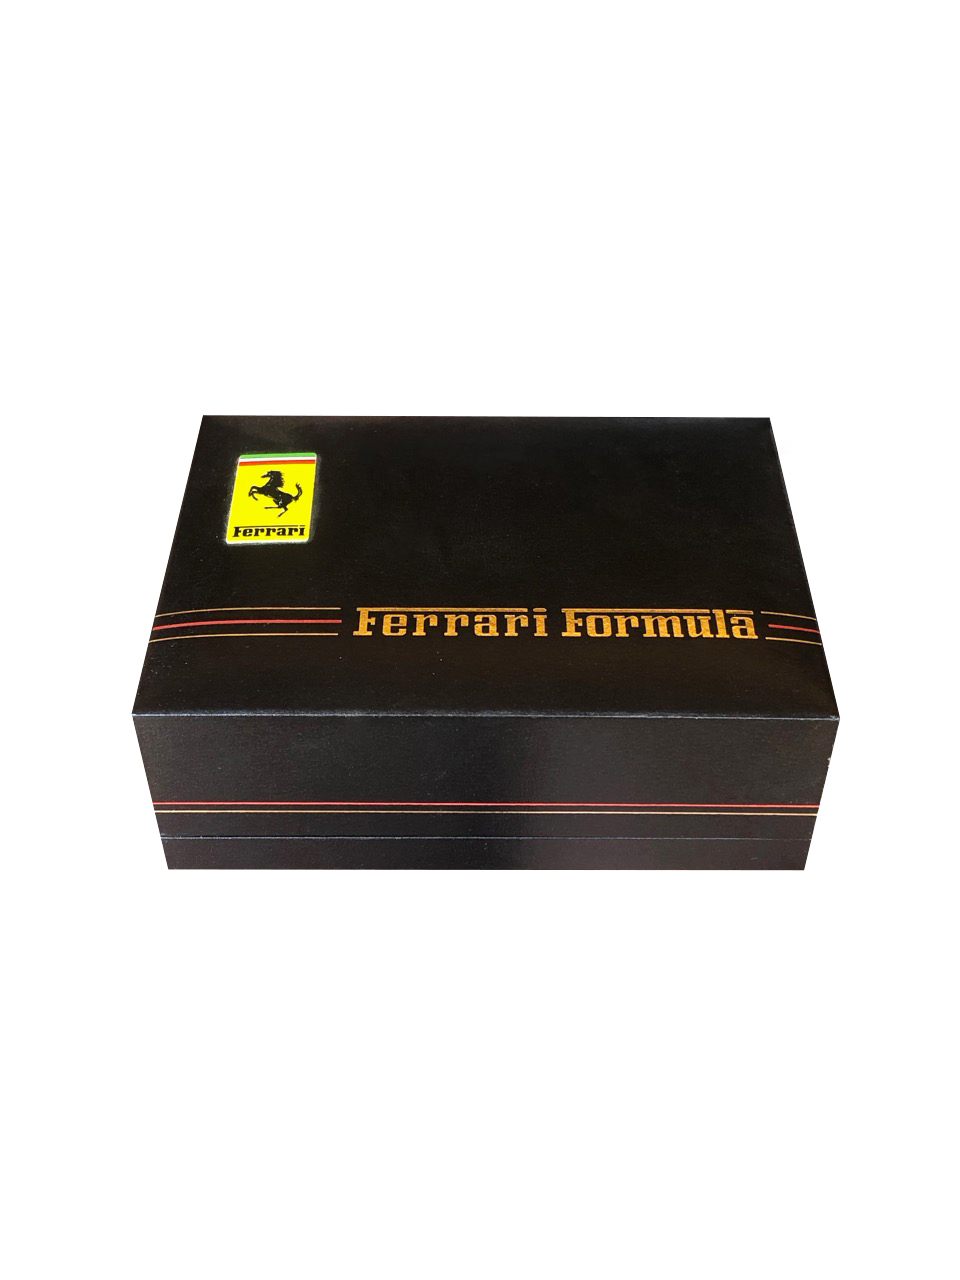 Ferrari by Cartier Gents Model carton 1990s - Gisbert A. Joseph Watches